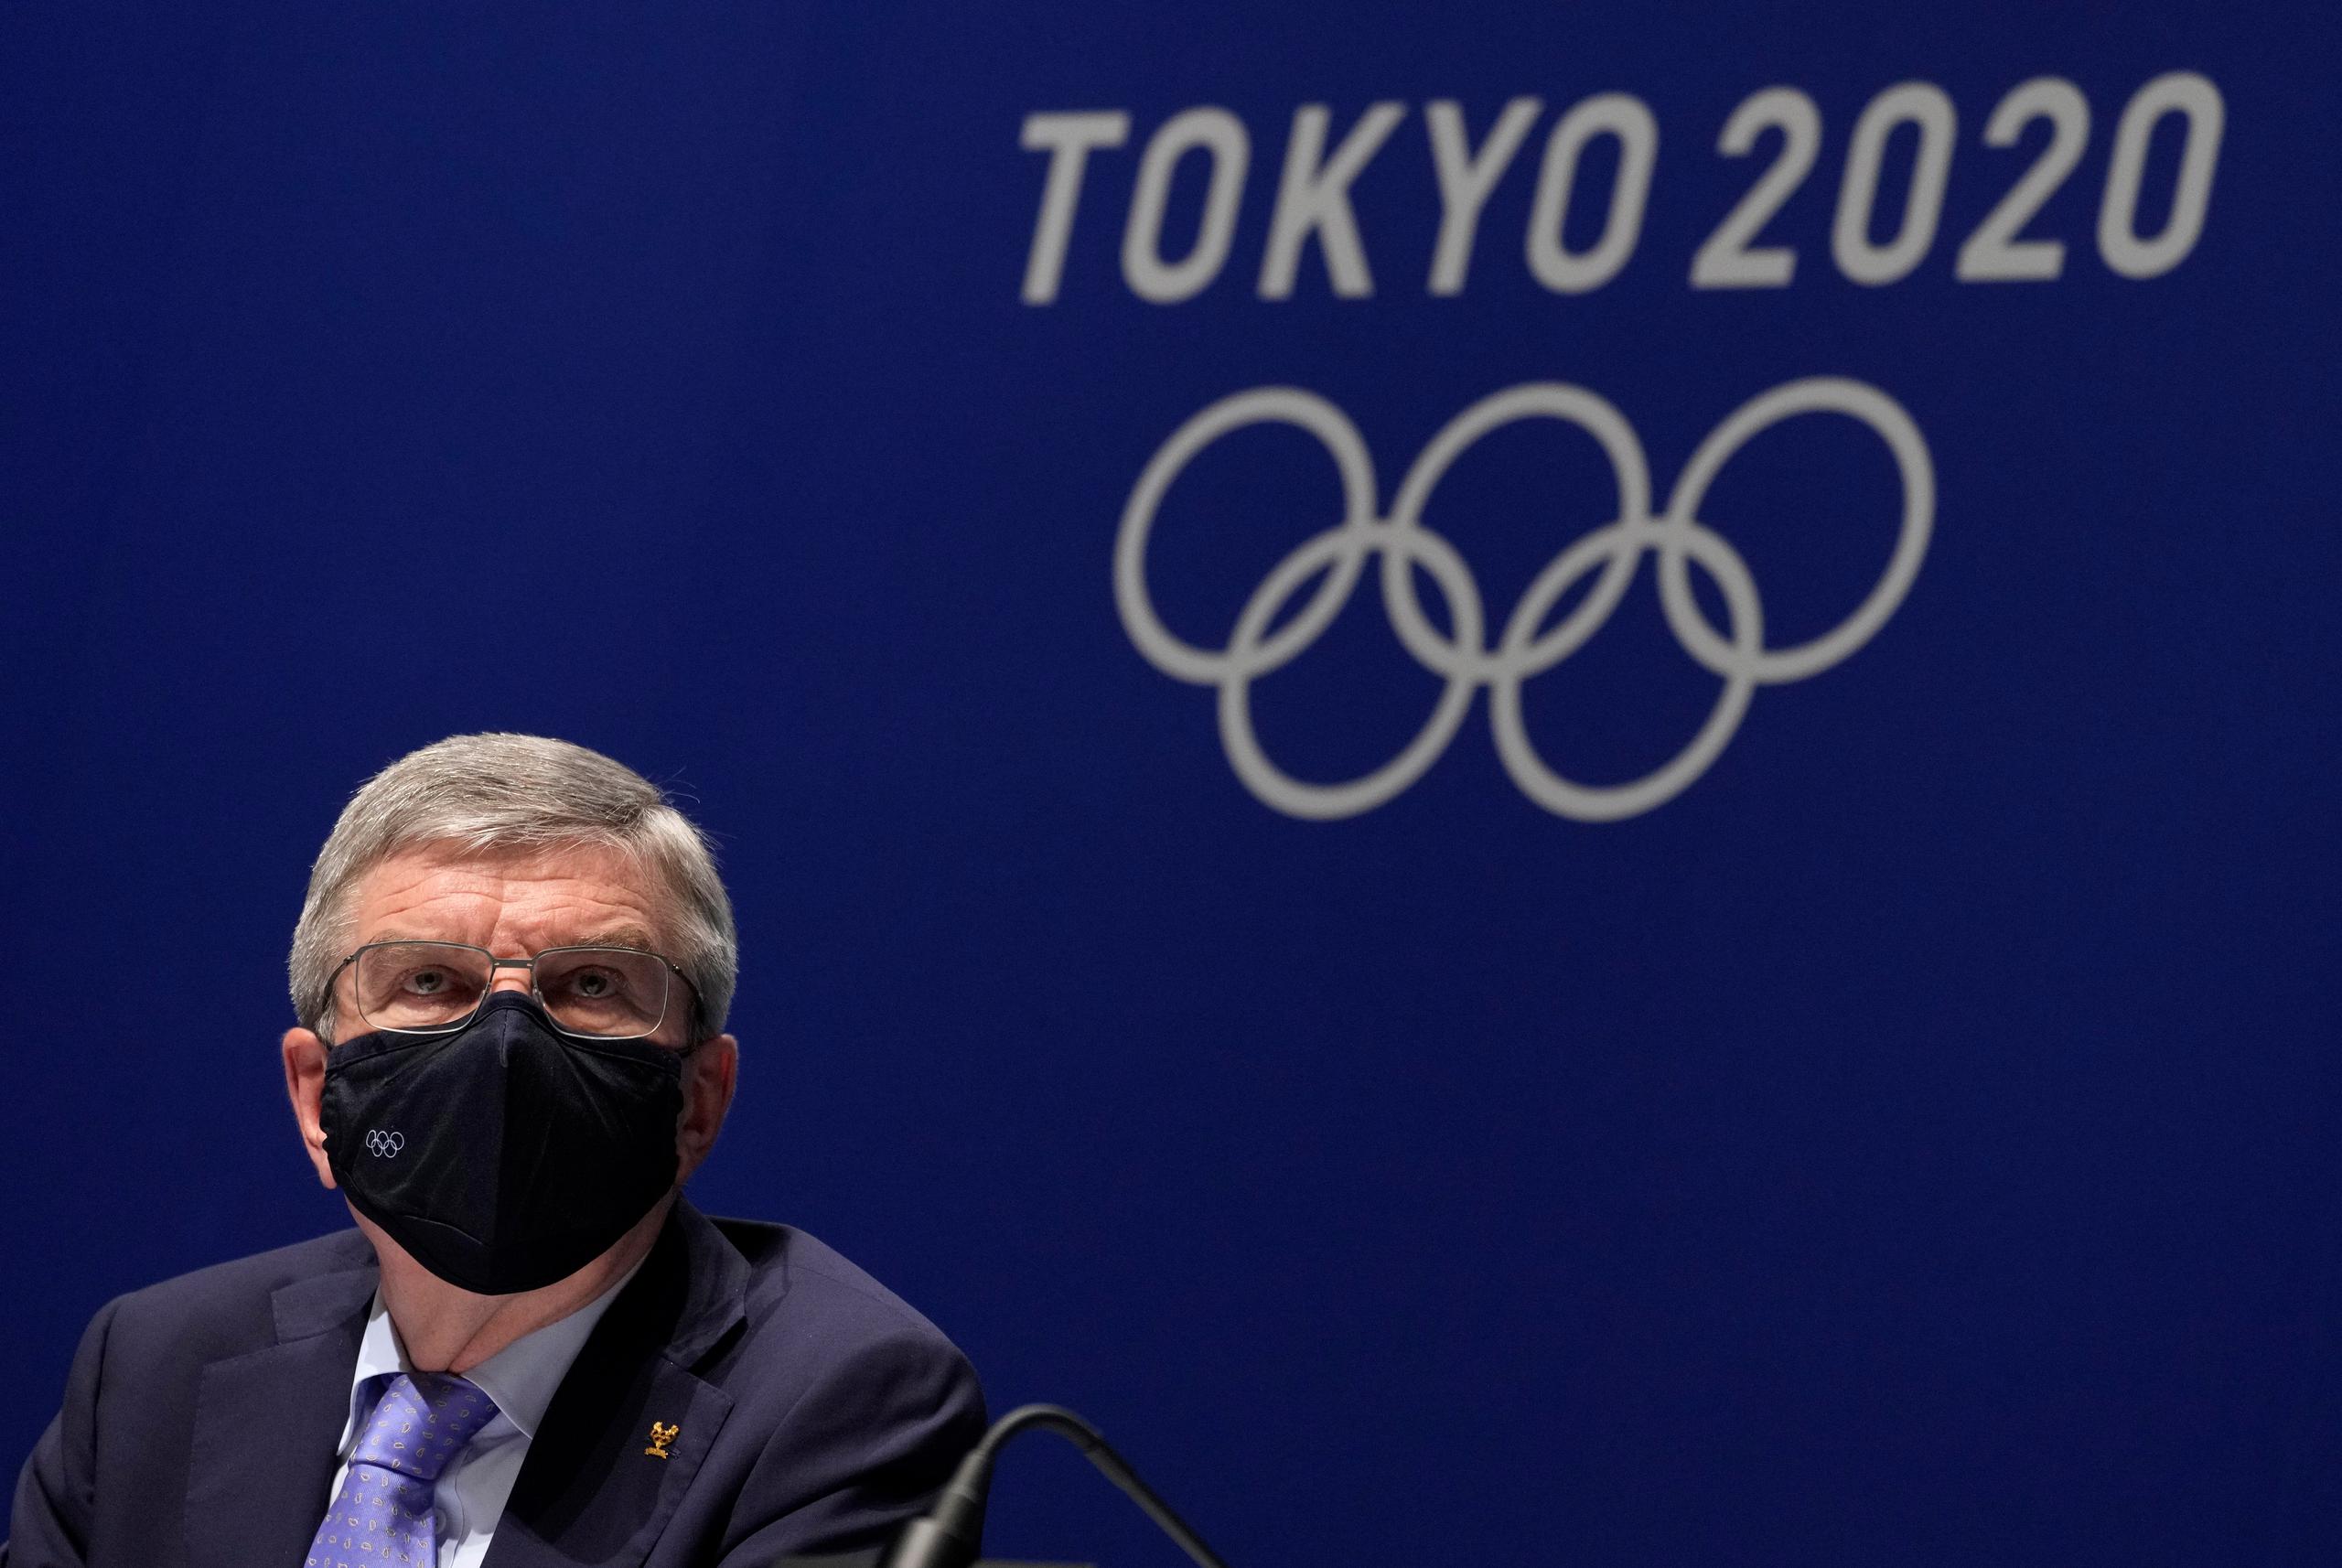 El presidente del Comité Olímpico Internacional (COI), Thomas Bach, argumentó que el hallazgo “no supone riesgos” para los atletas.